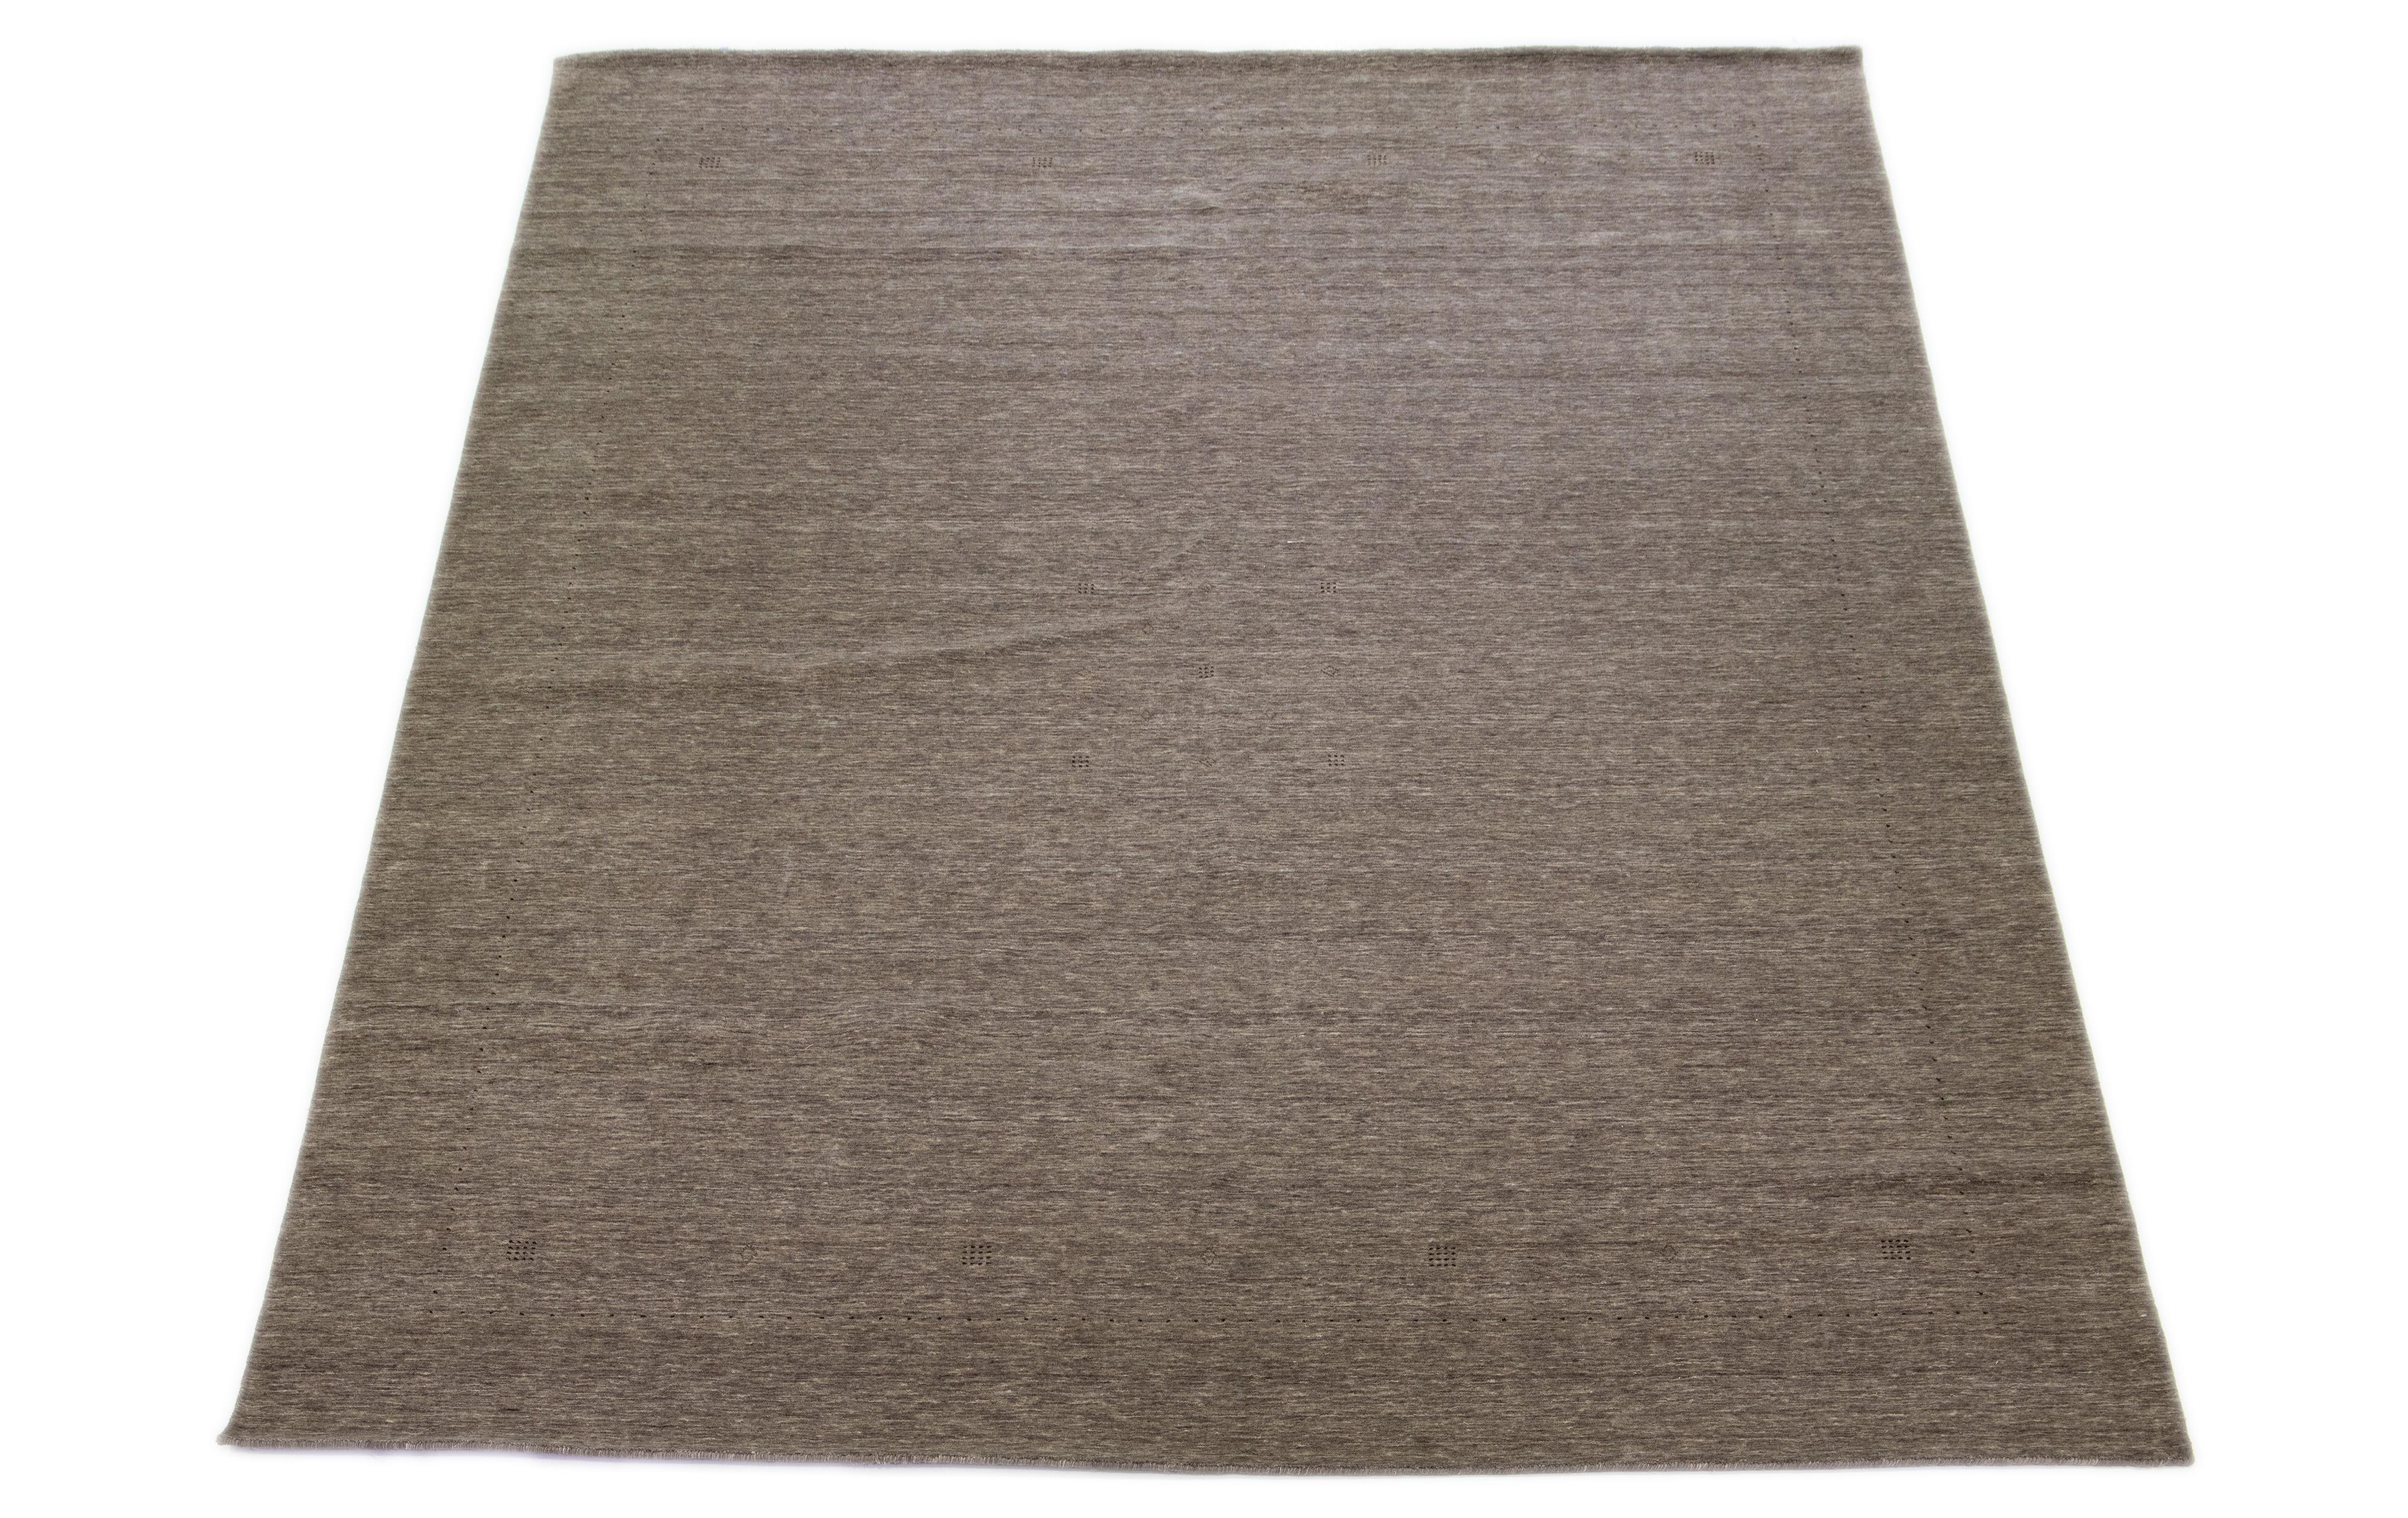 Ce tapis moderne Eleg, tissé à la main avec un soin exceptionnel, incarne l'élégance et le style contemporain avec son motif géométrique minimaliste. La base brune séduisante est finement rehaussée de détails brun foncé.

Ce tapis mesure 12'1